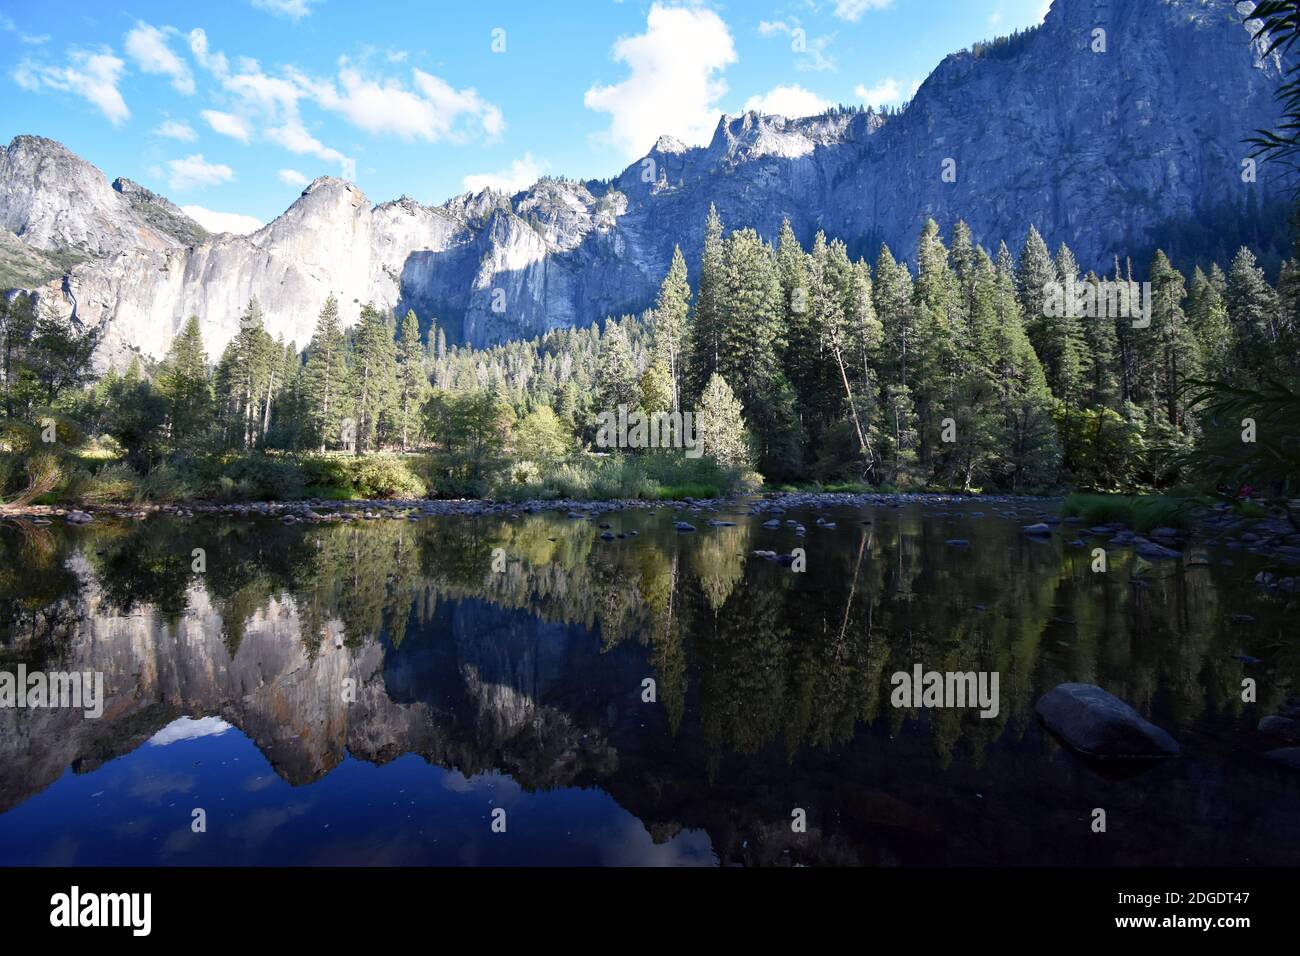 El reflejo de los acantilados de granito y los árboles en las tranquilas aguas del río Merced desde Valley View en el Parque Nacional Yosemite, California, EE.UU Foto de stock